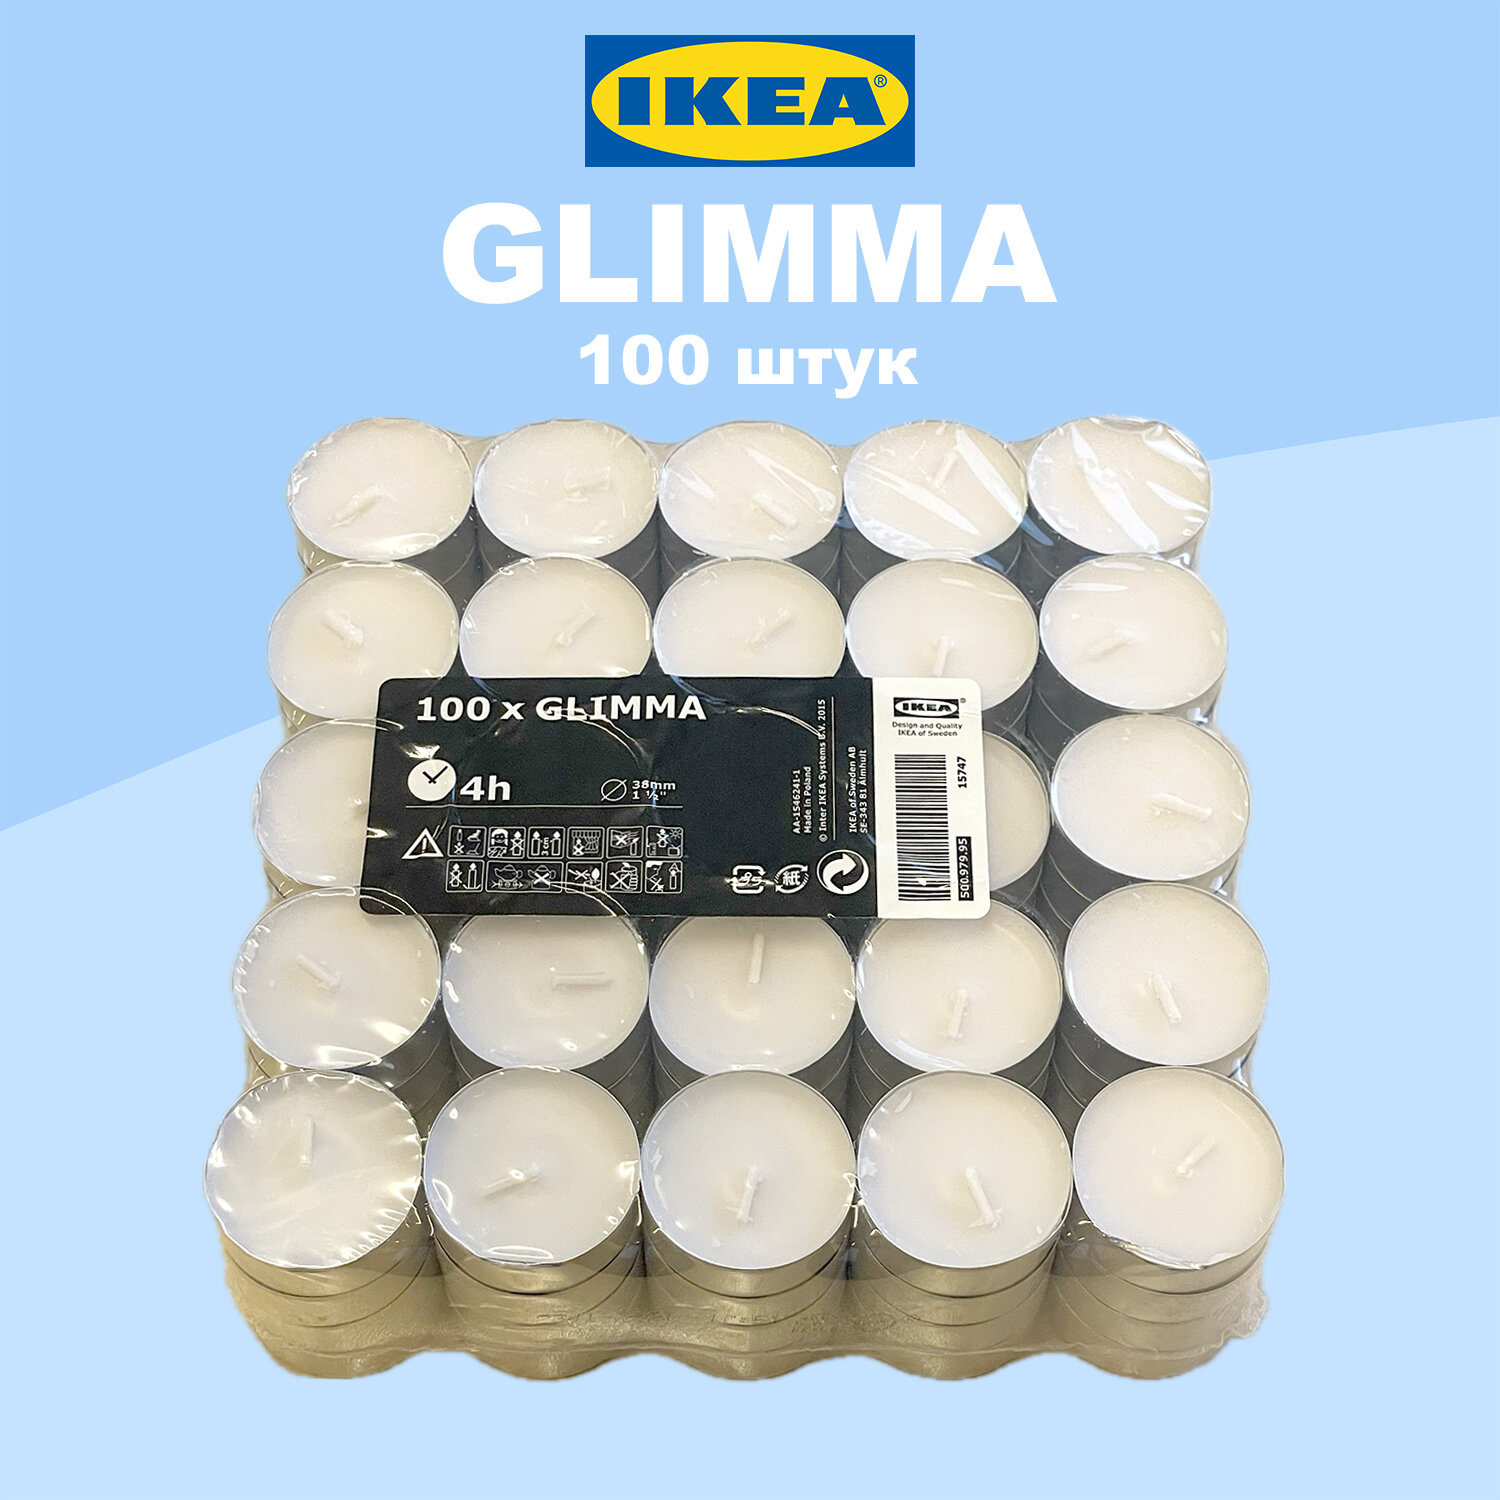 Чайные свечи IKEA GLIMMA / икеа глимма, набор 100 штук